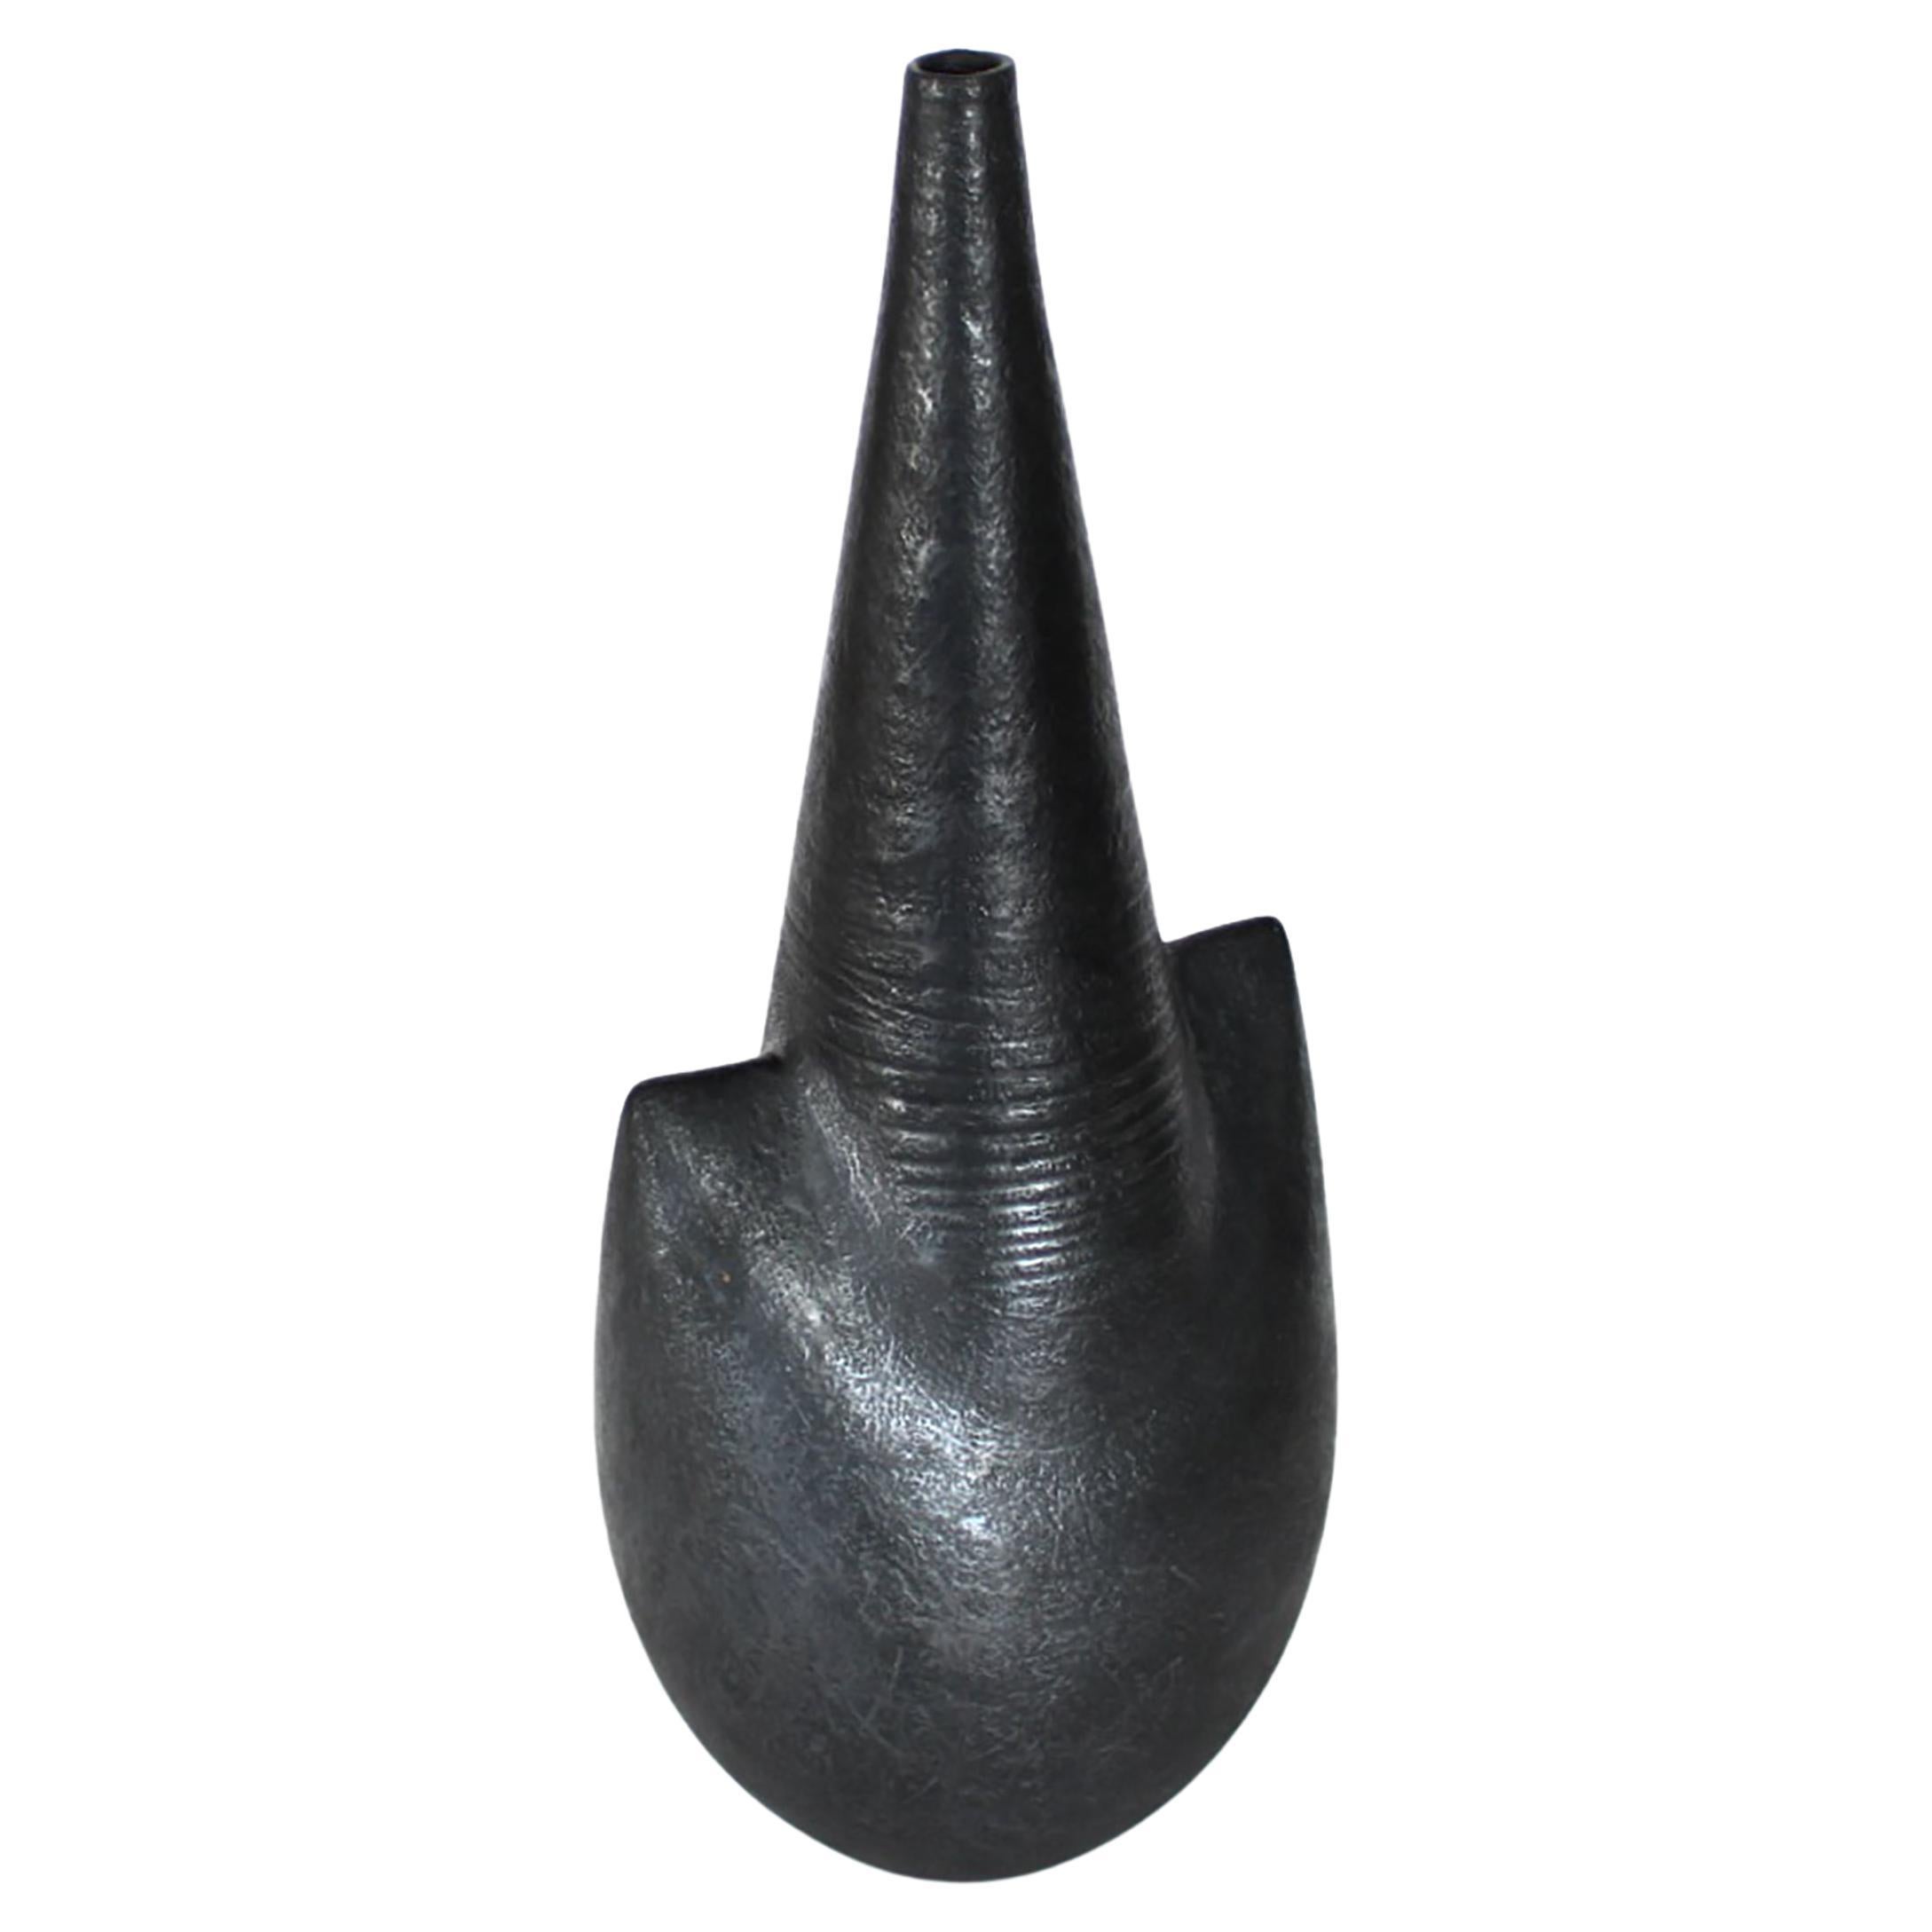 Un grand vase en céramique de l'artiste français Andre Bloch. Bloch utilise une argile fortement chamottée et une glaçure d'un noir profond pour créer ses formes uniques. Circa 2010
